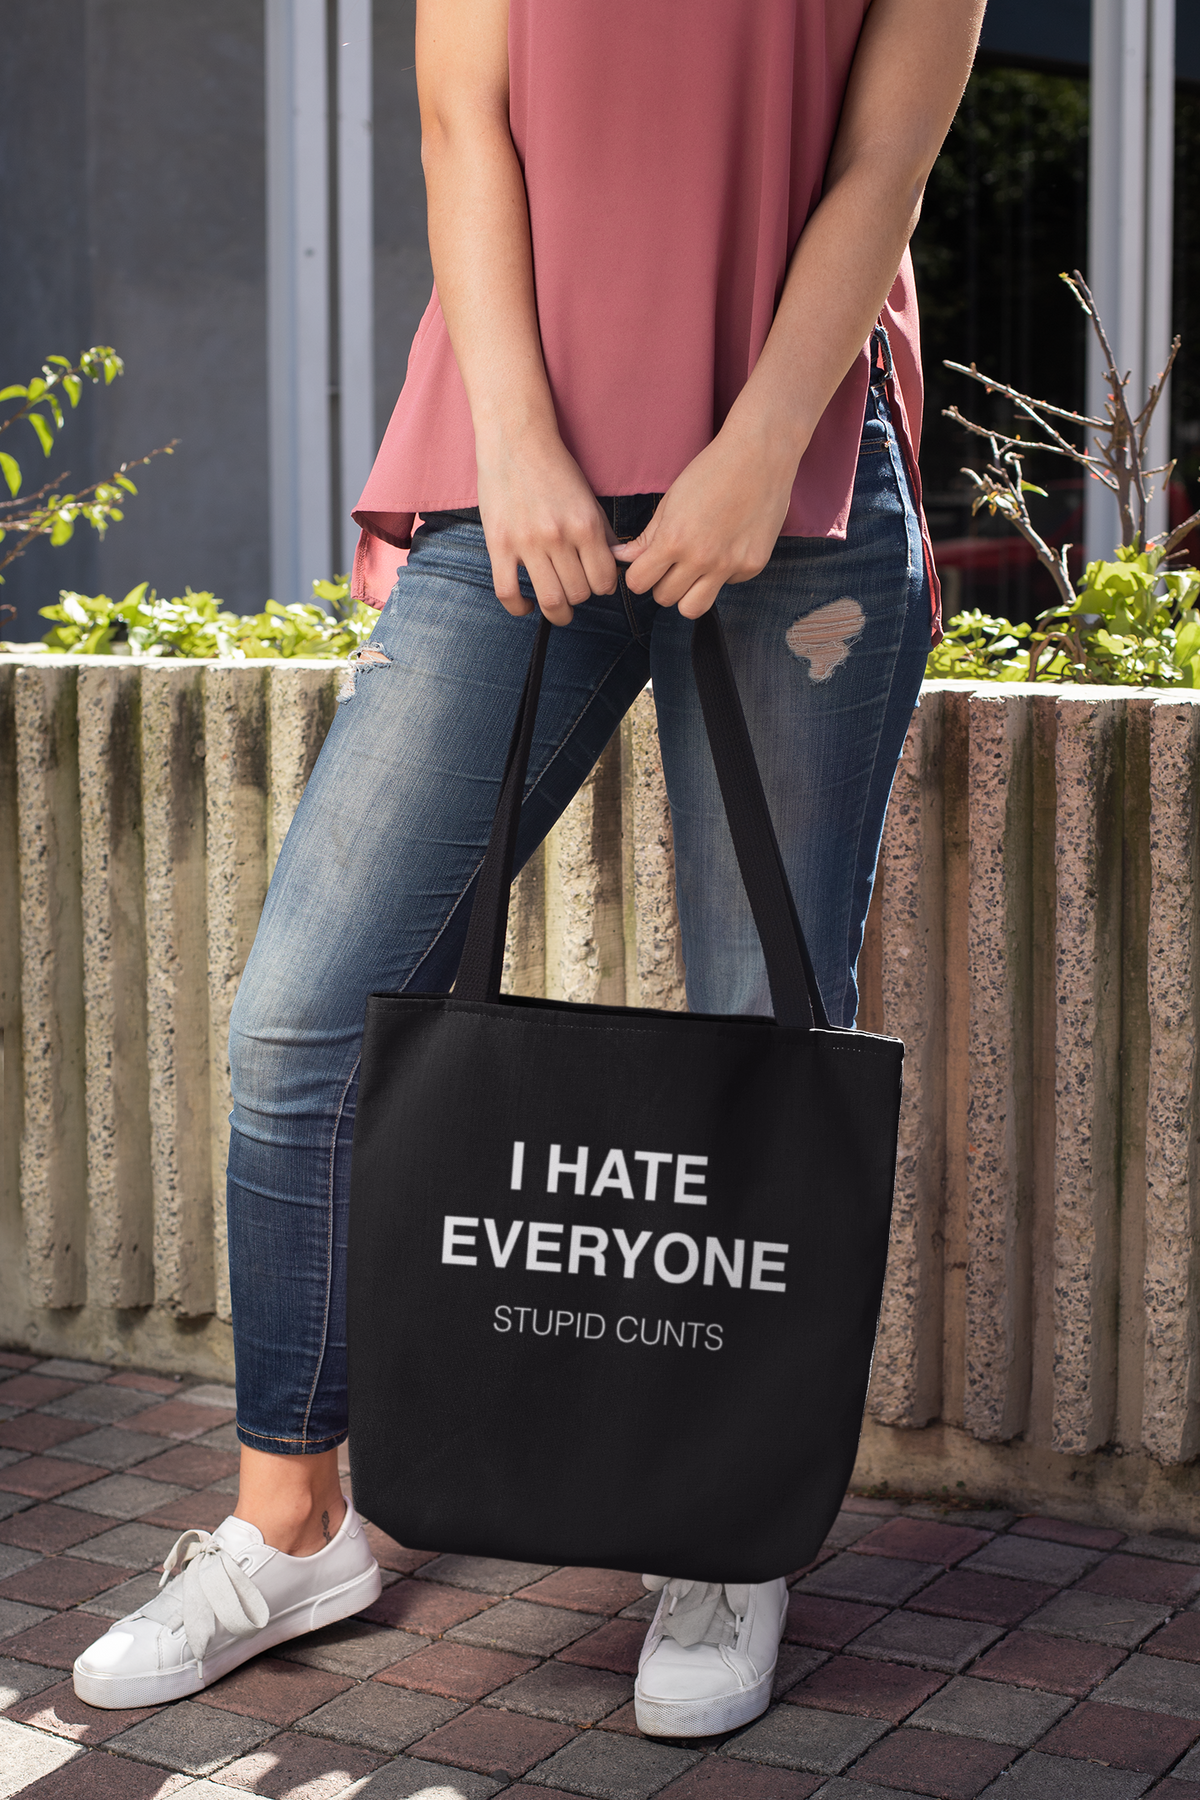 I Hate Everyone. Stupid Cunts Tote Bag